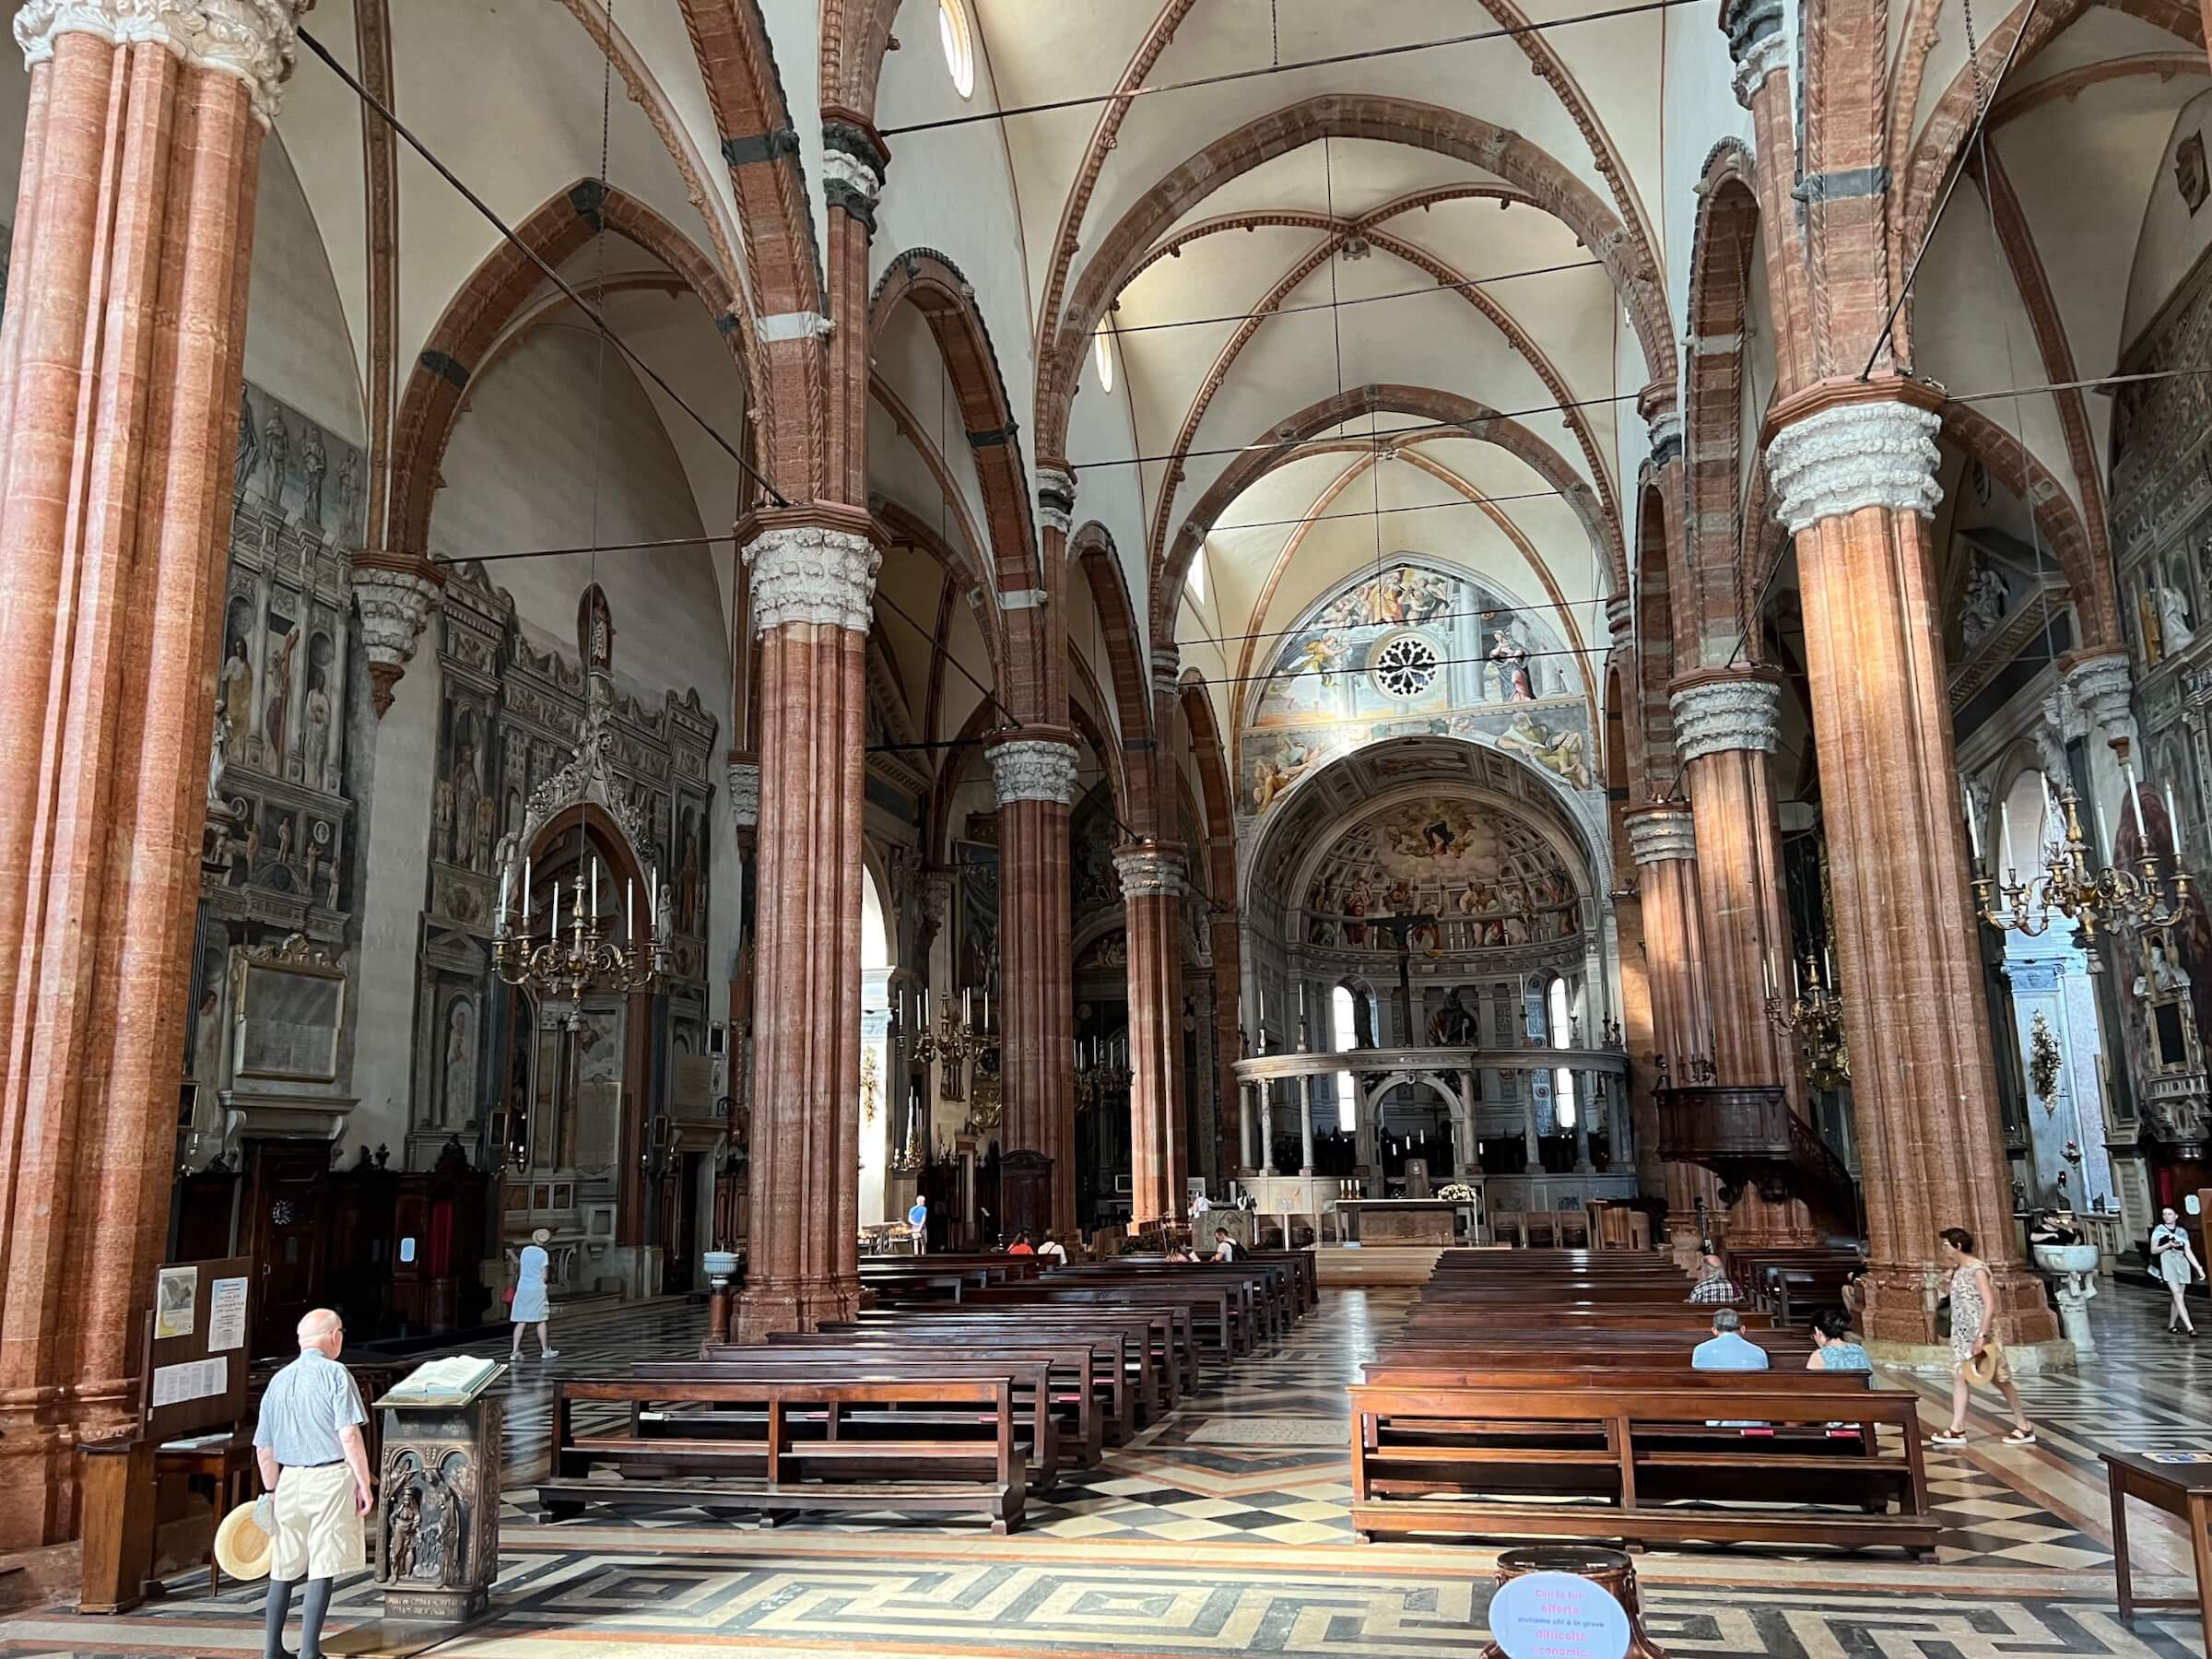 Duomo de Verona - Catedral de Santa Maria Assunta